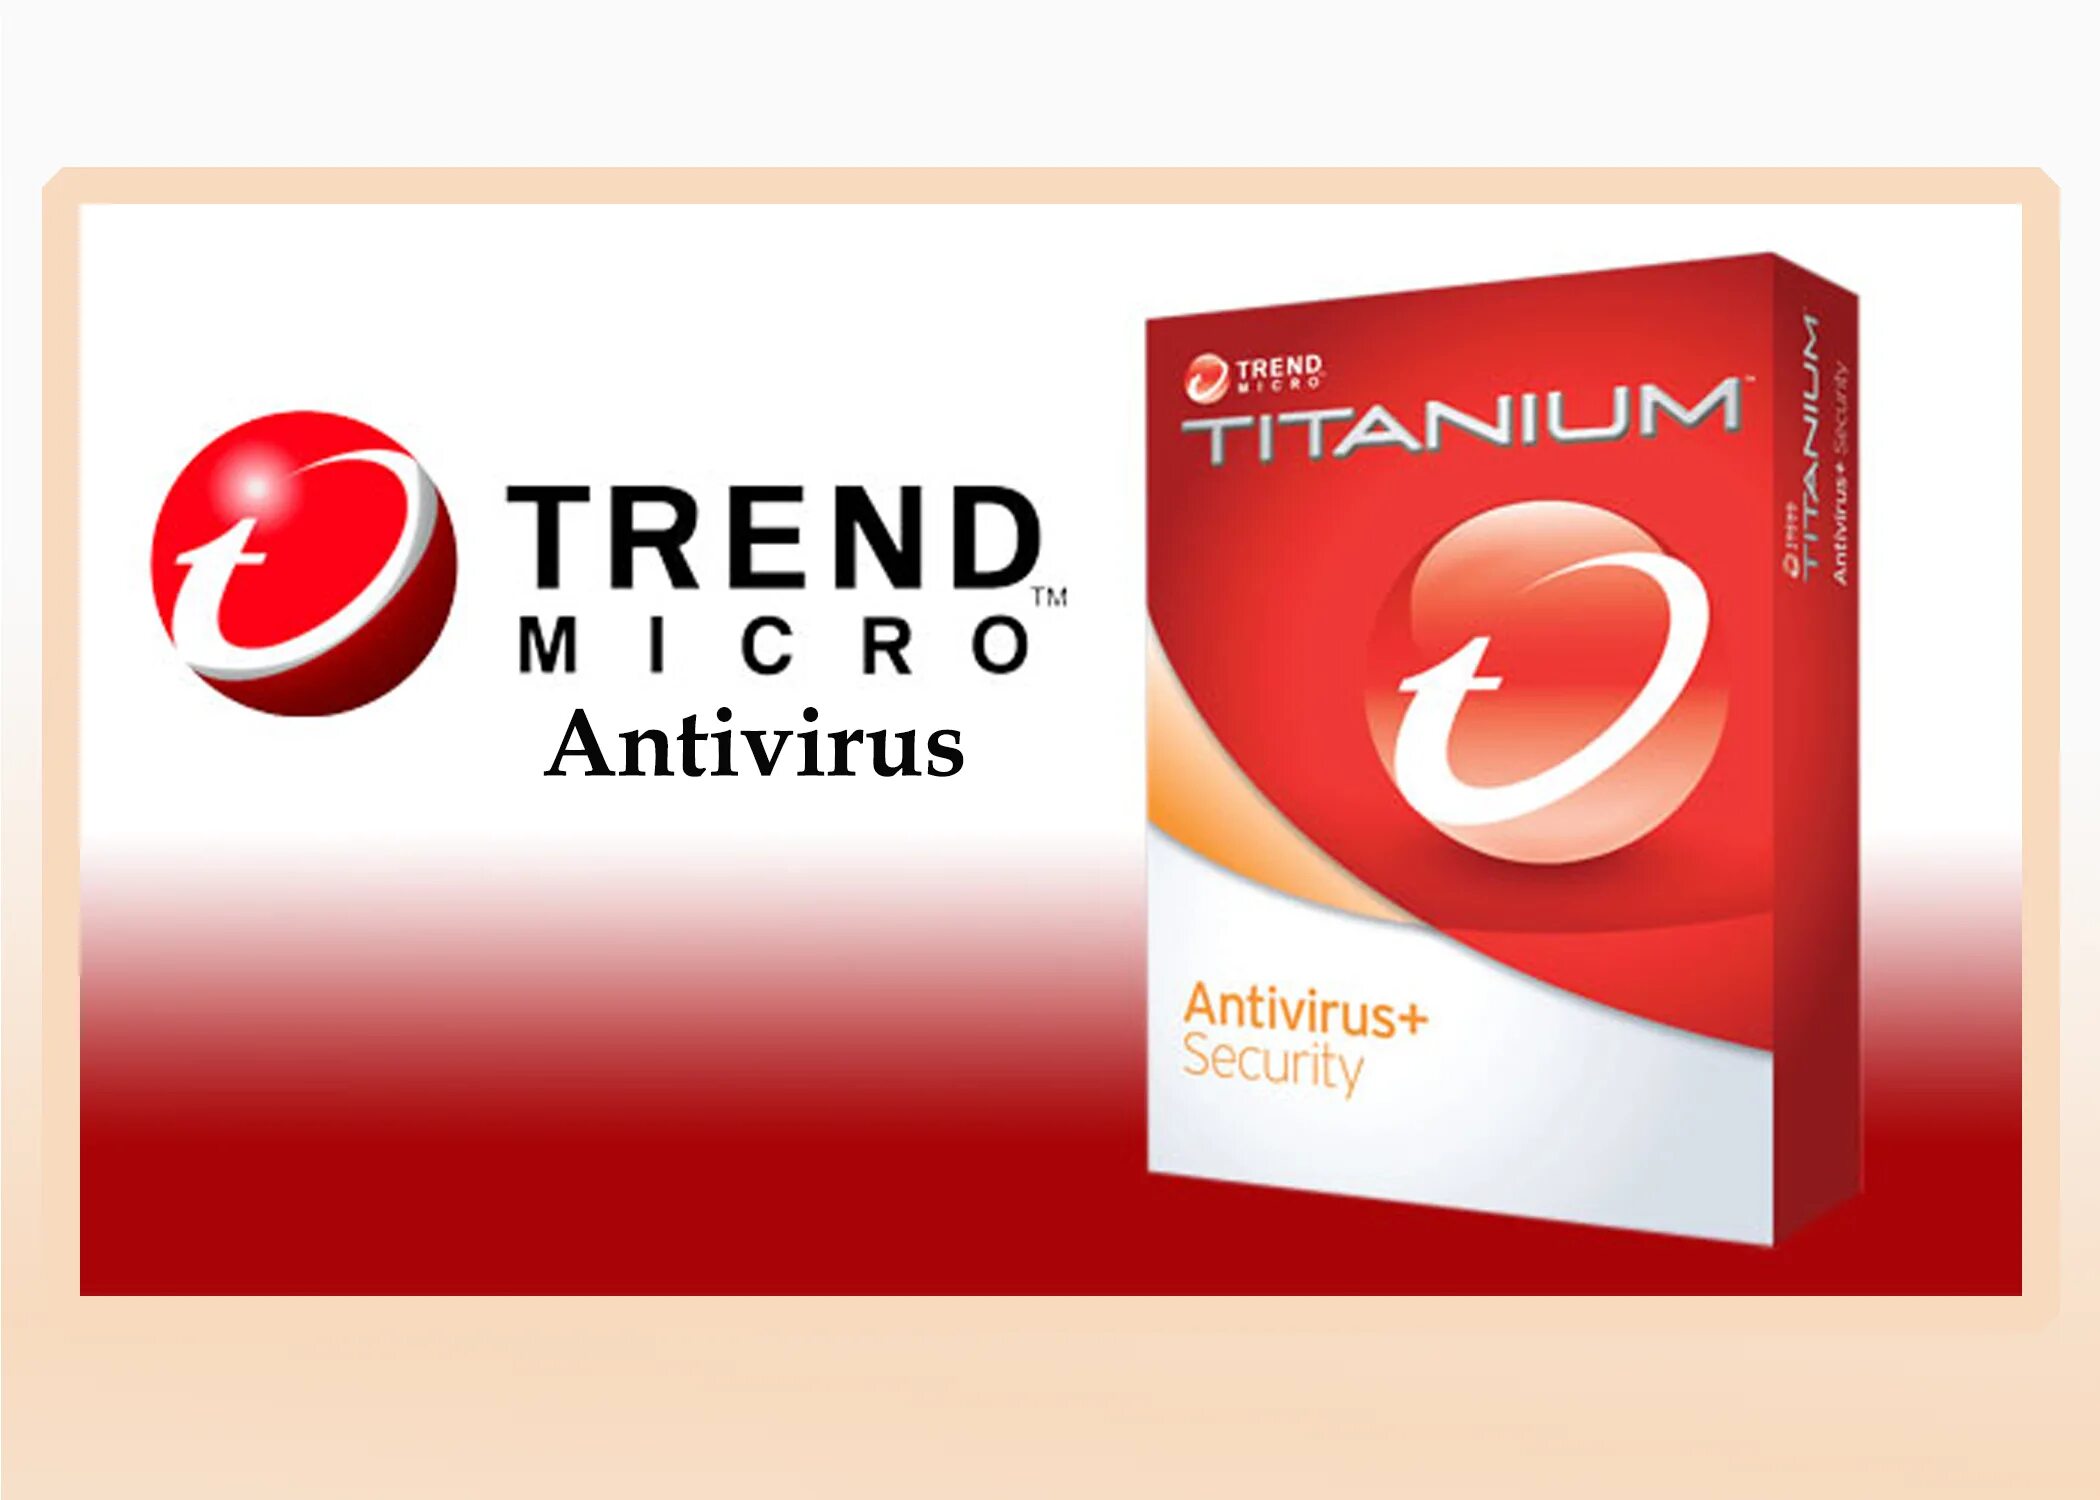 Тренд микро. Trend Micro. Trend Micro Antivirus+. Антивирус Титаниум. Trend Micro логотип.